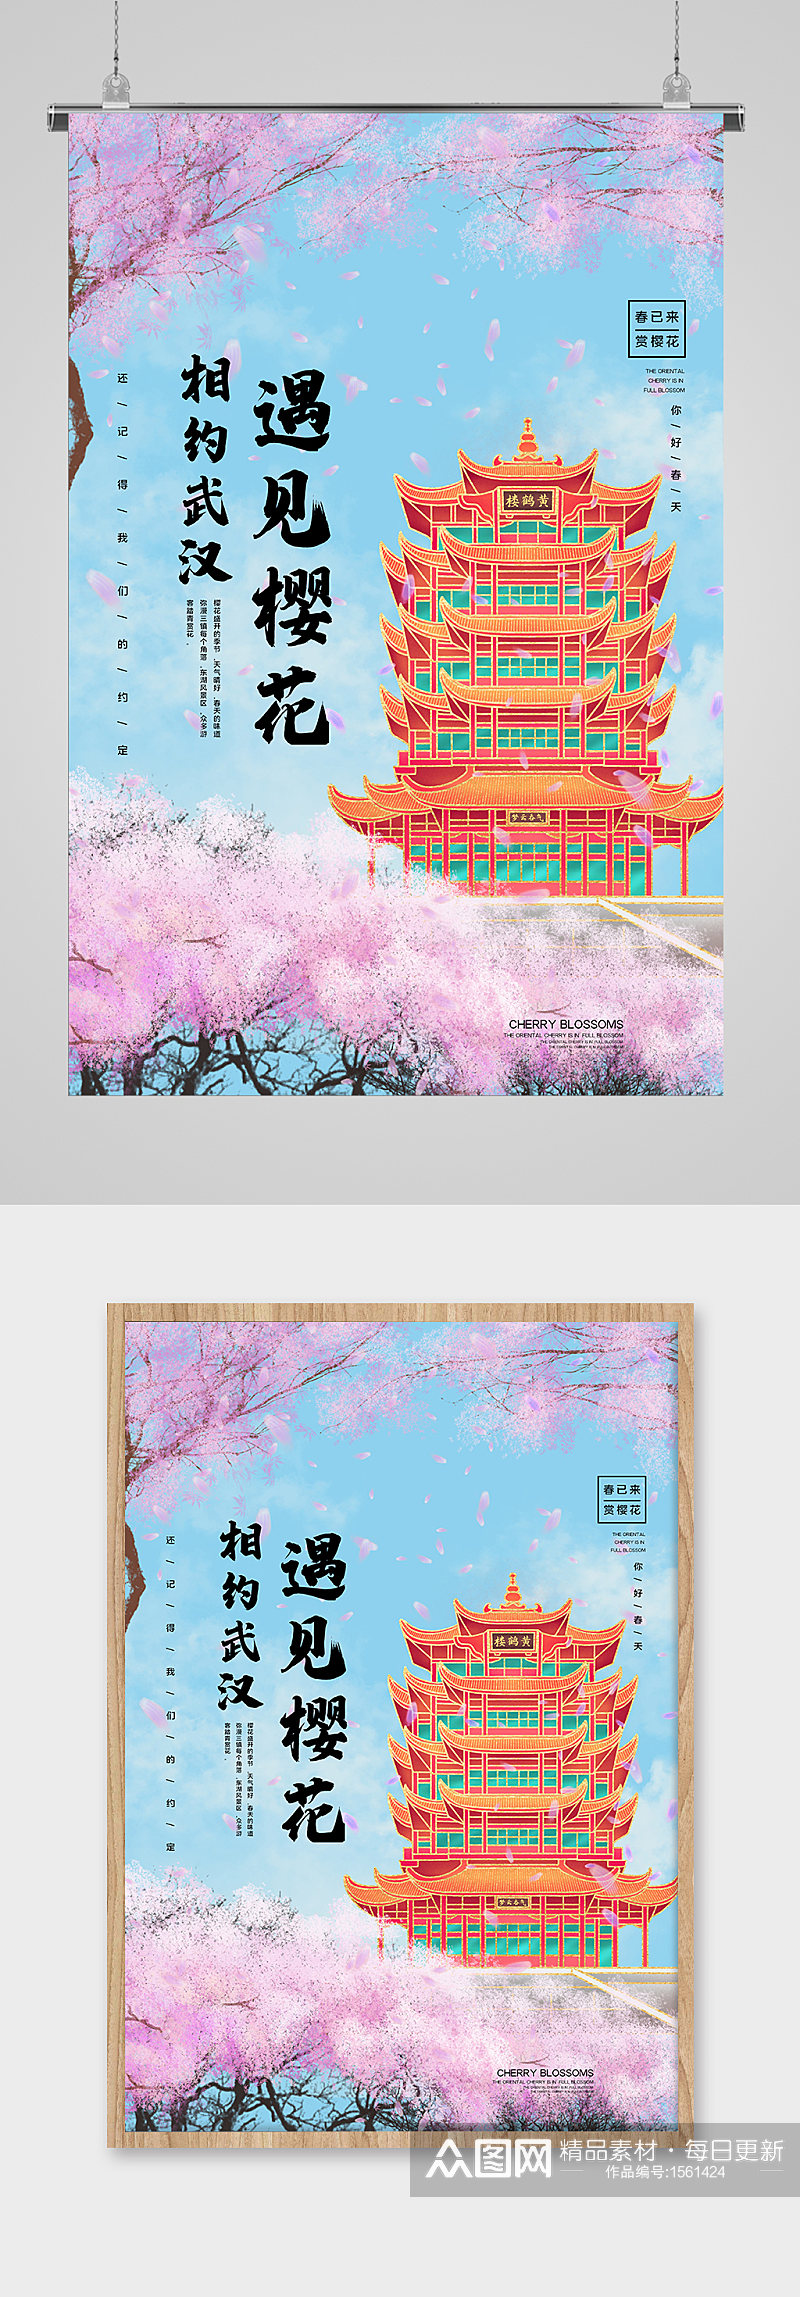 春季赏樱花宣传海报素材